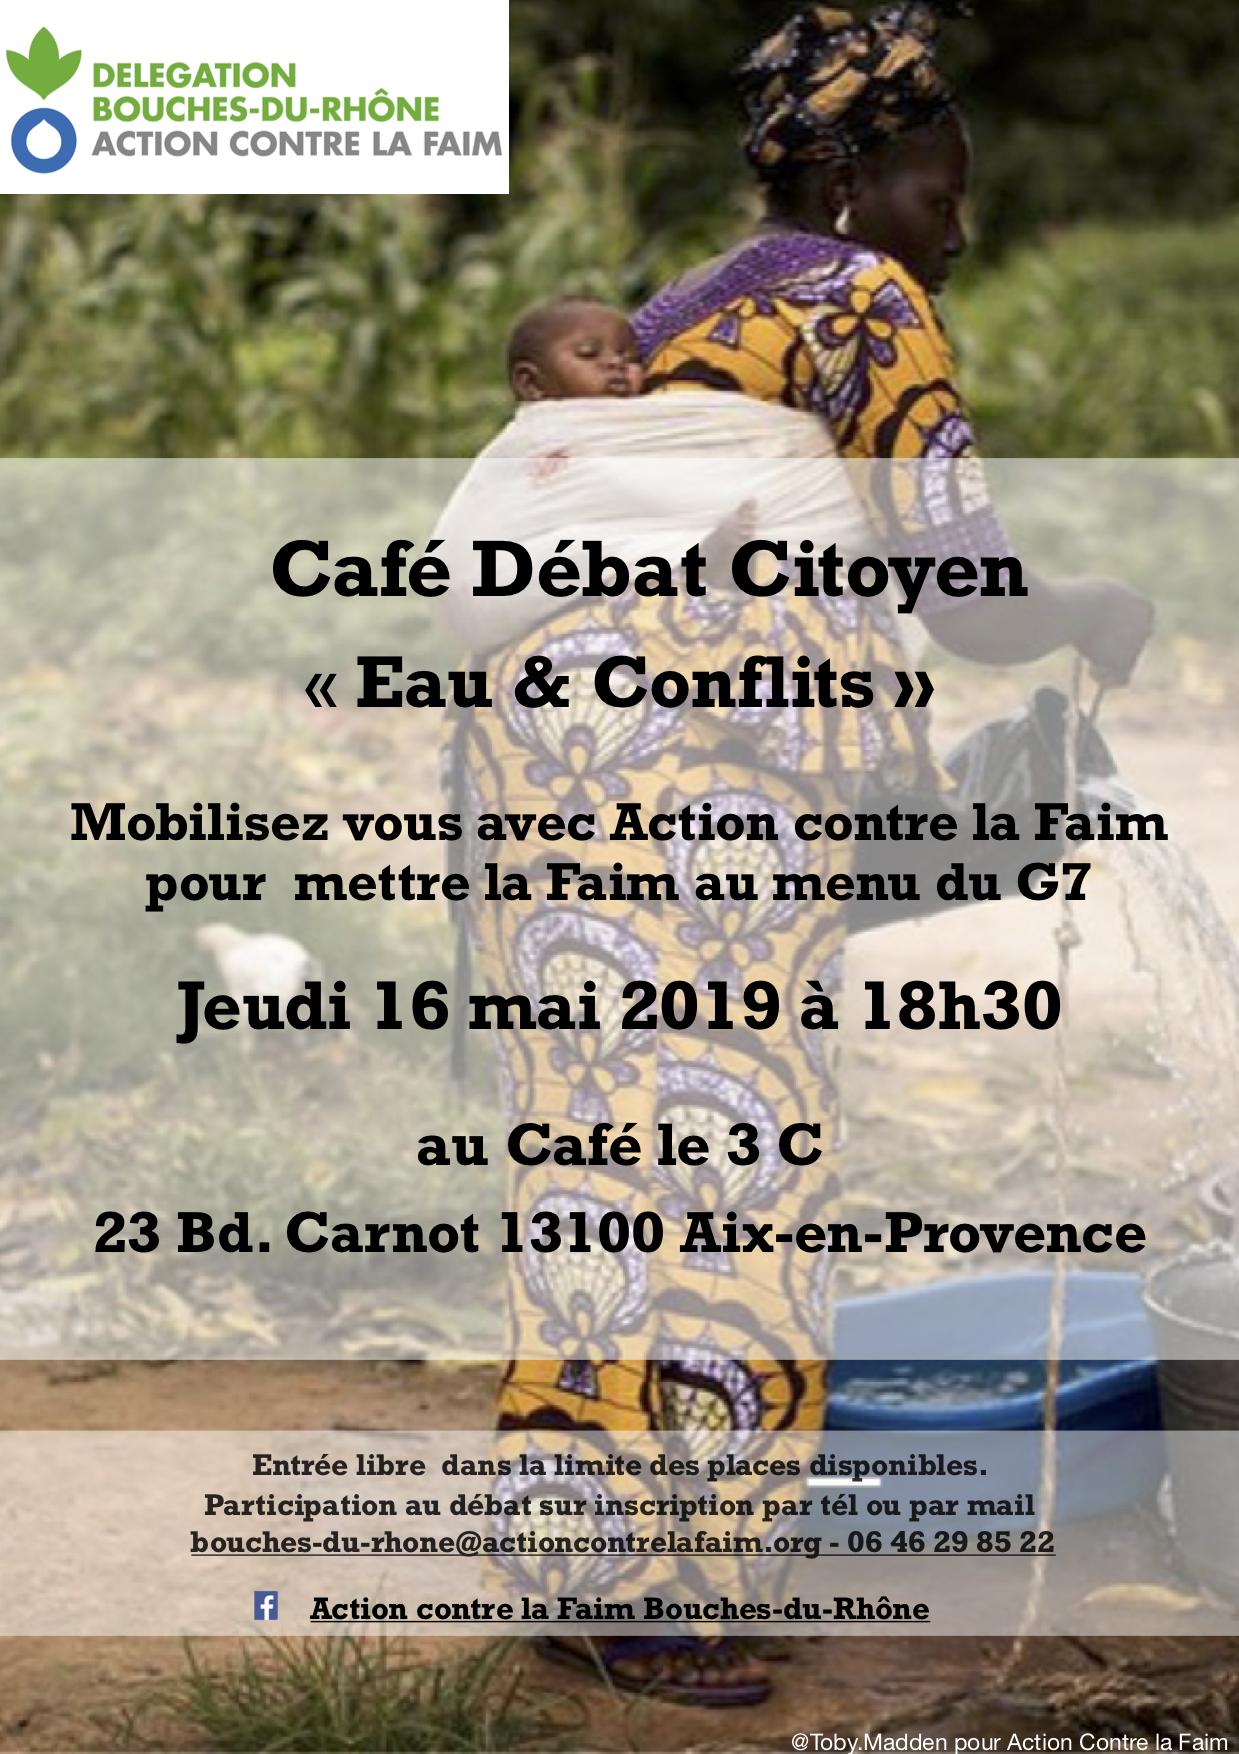 Café-Débat : "Eaux & Conflits" par Action contre la Faim Bouches-du-Rhône